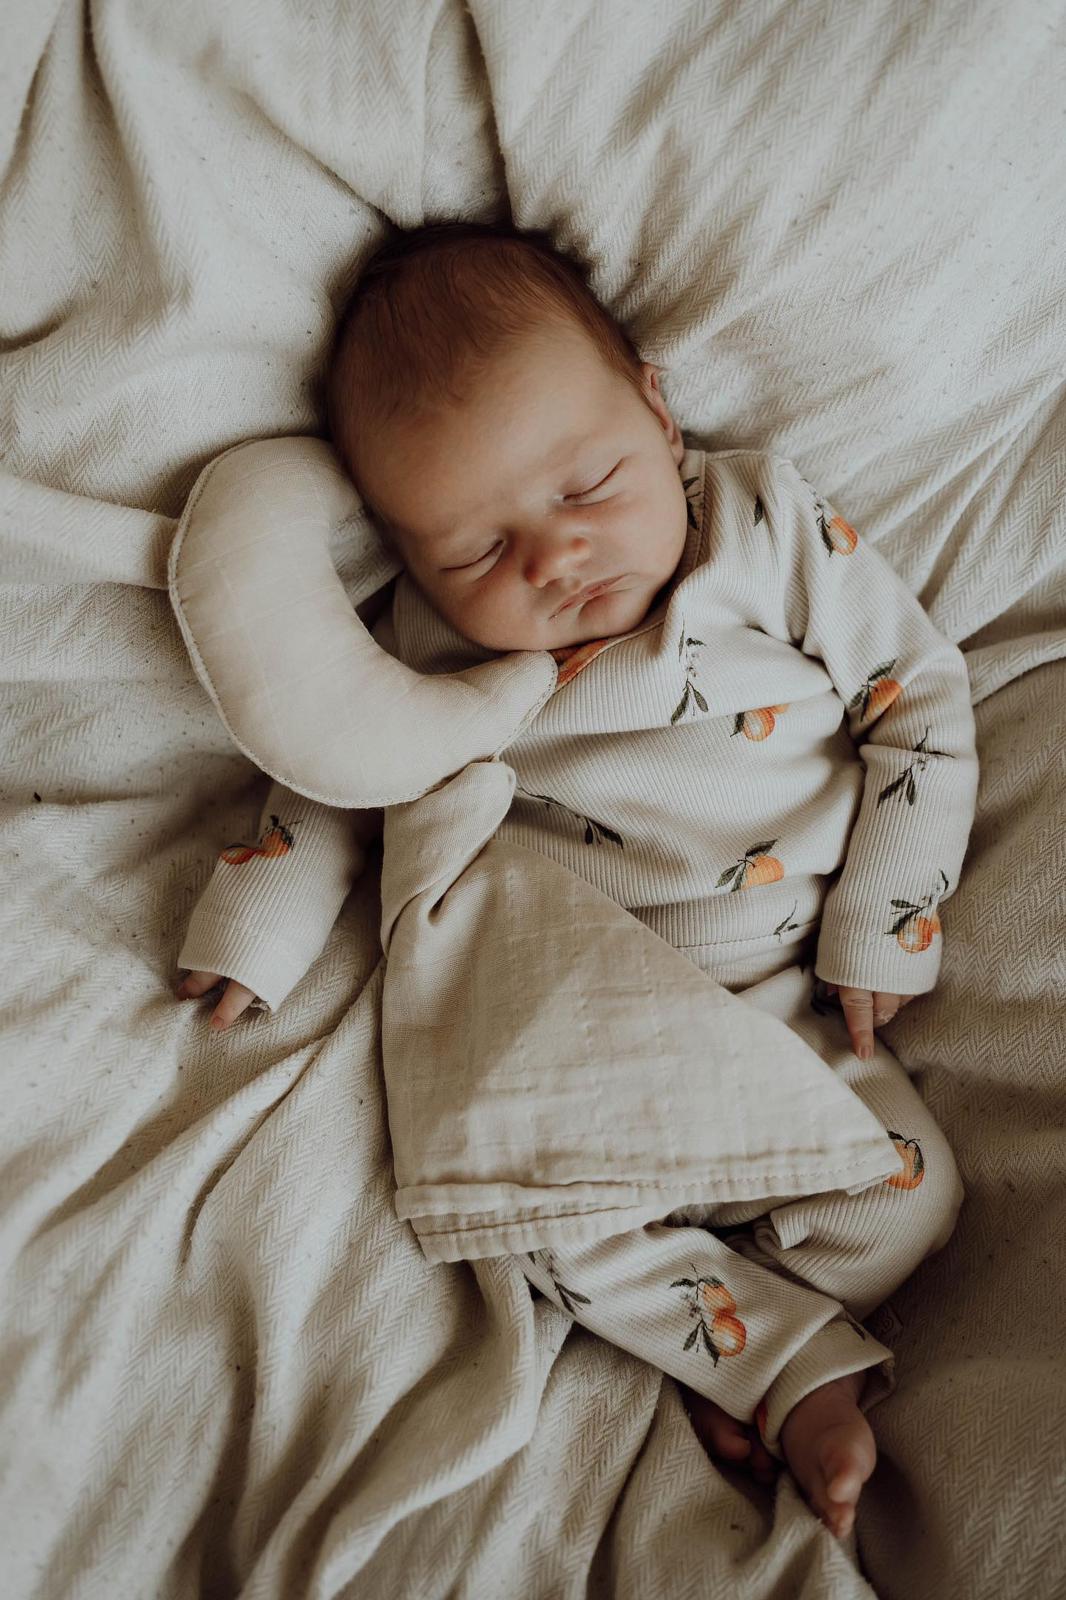 Een vredige pasgeboren baby slaapt heerlijk, ingebakerd in een Osman Overslagshirt Oranjebeige met een zacht patroon, dat rust en onschuld uitstraalt. De inbakerdoek is gemaakt van OEKO-TEX katoen.